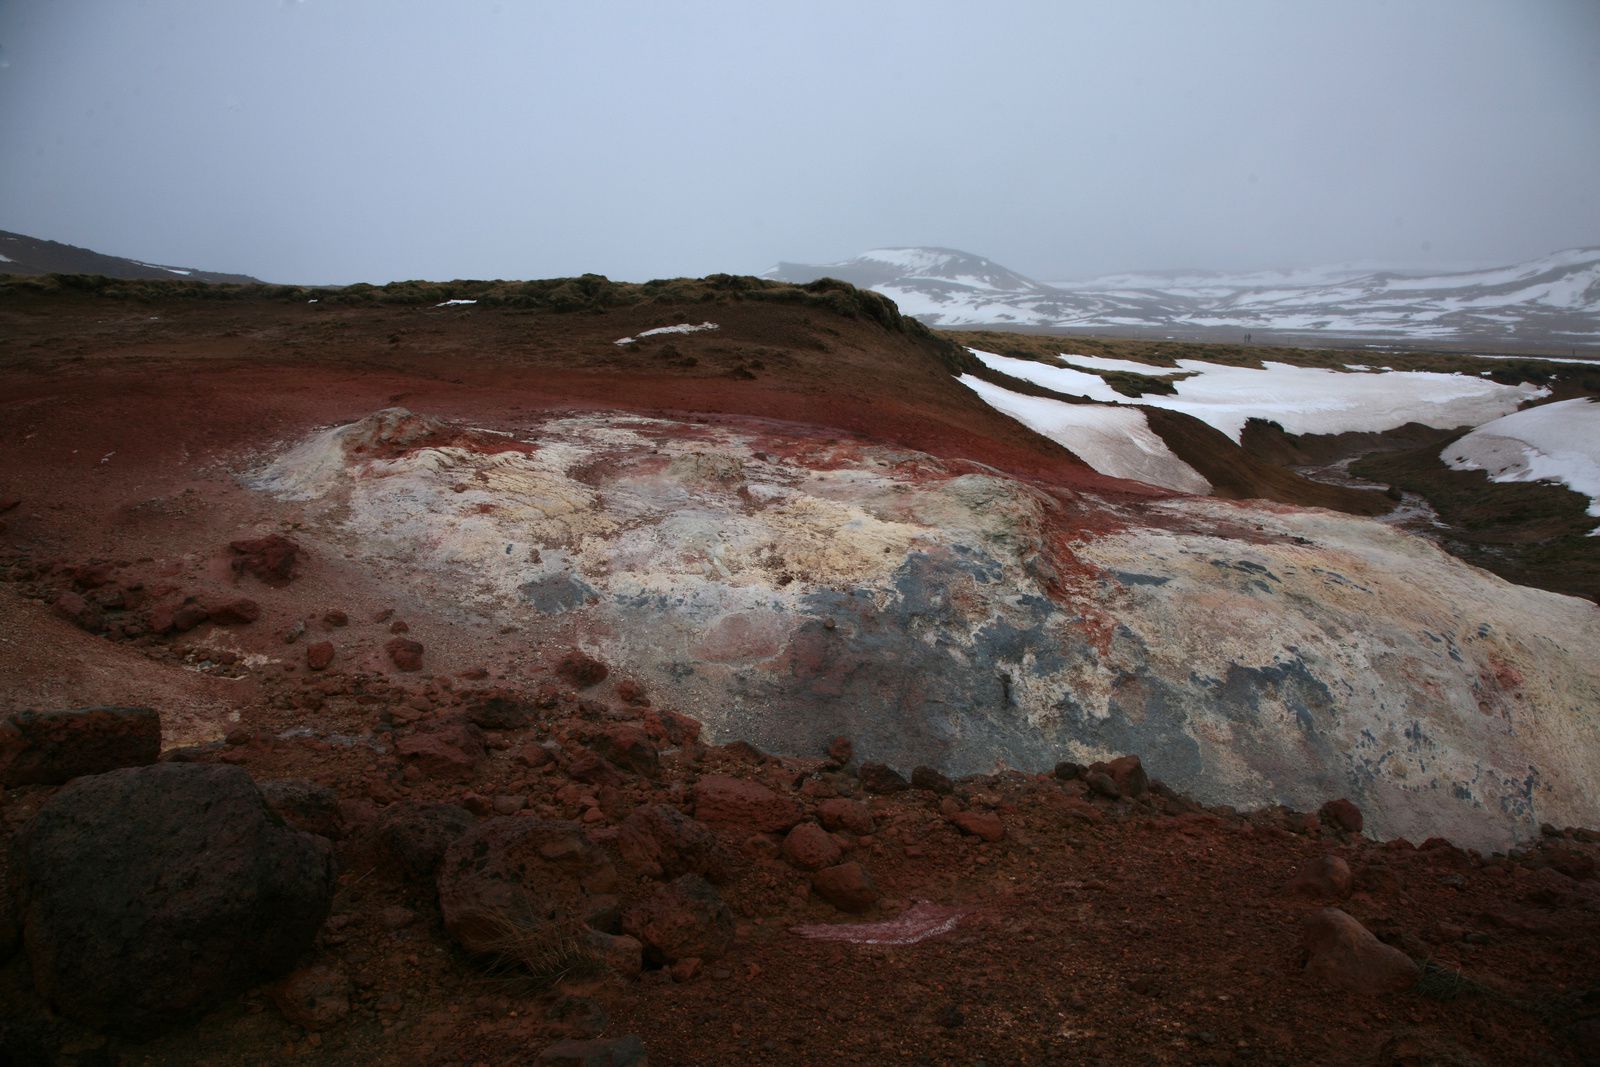 Le champ géothermal de Krísuvík-Seltún - accords de teinte entre les roches altérées, oxydées et le ciel plombé - photo © Bernard Duyck 2015